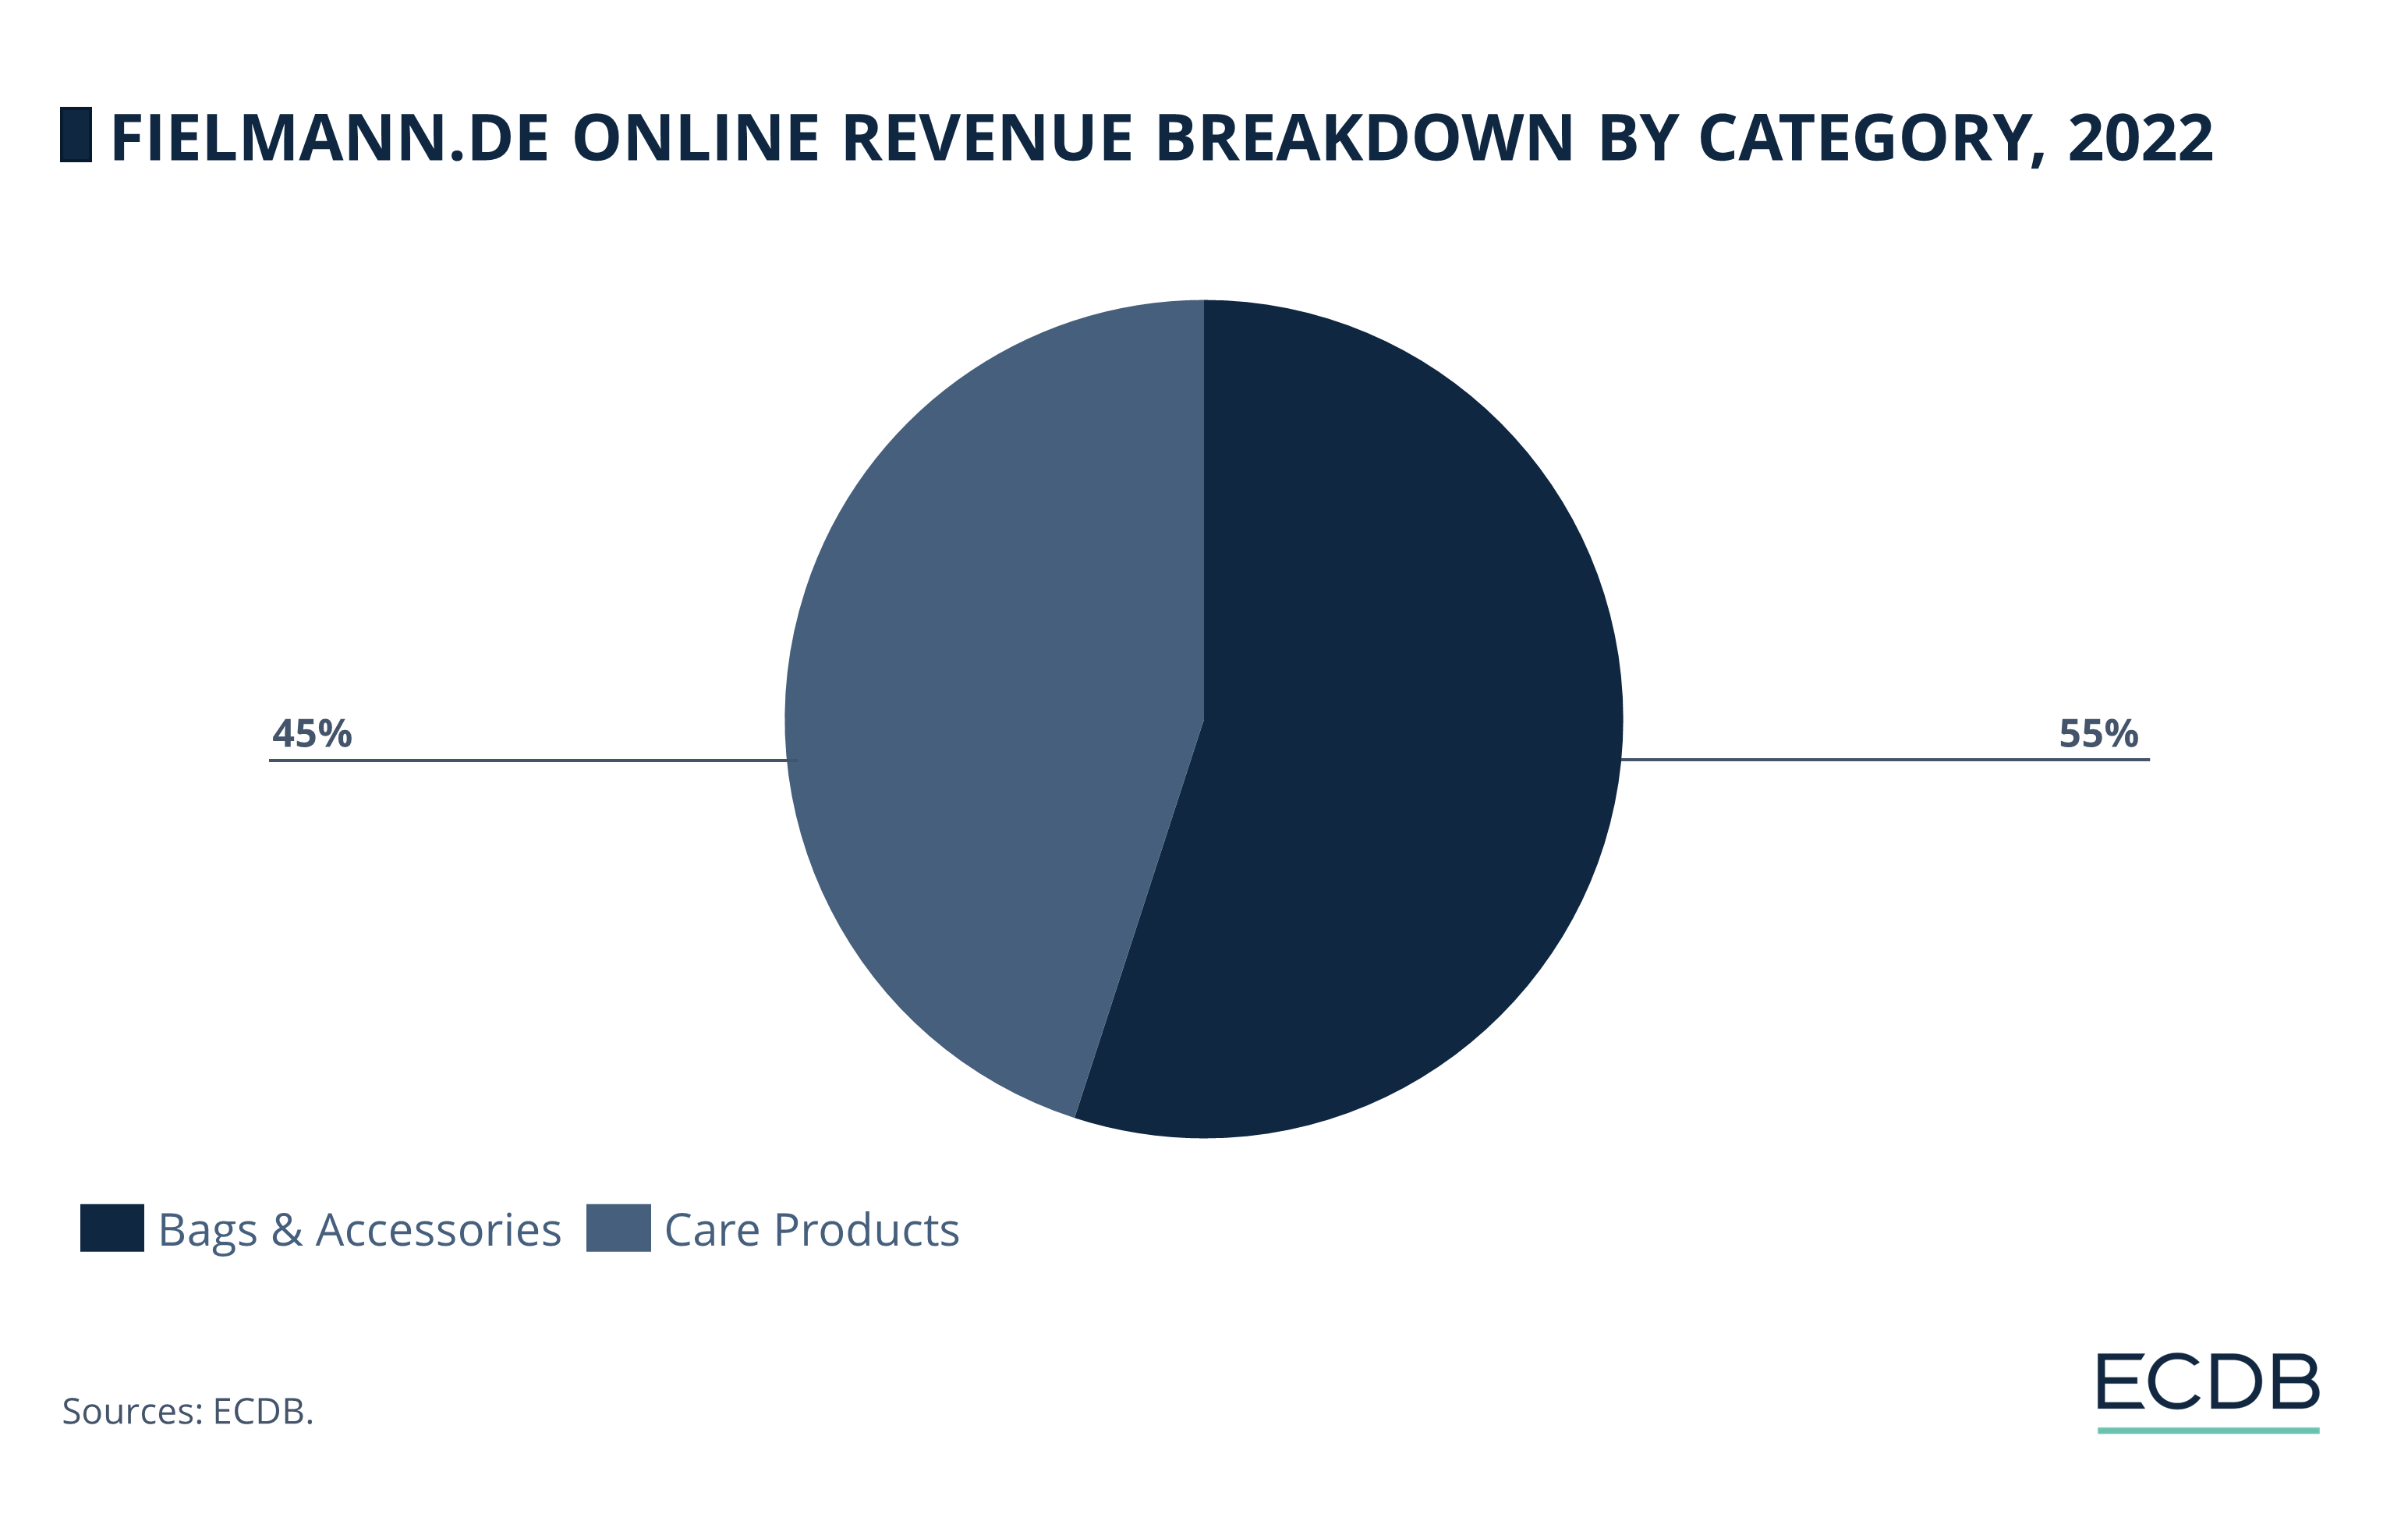 Fielmann.de Online Revenue Breakdown by Category, 2022